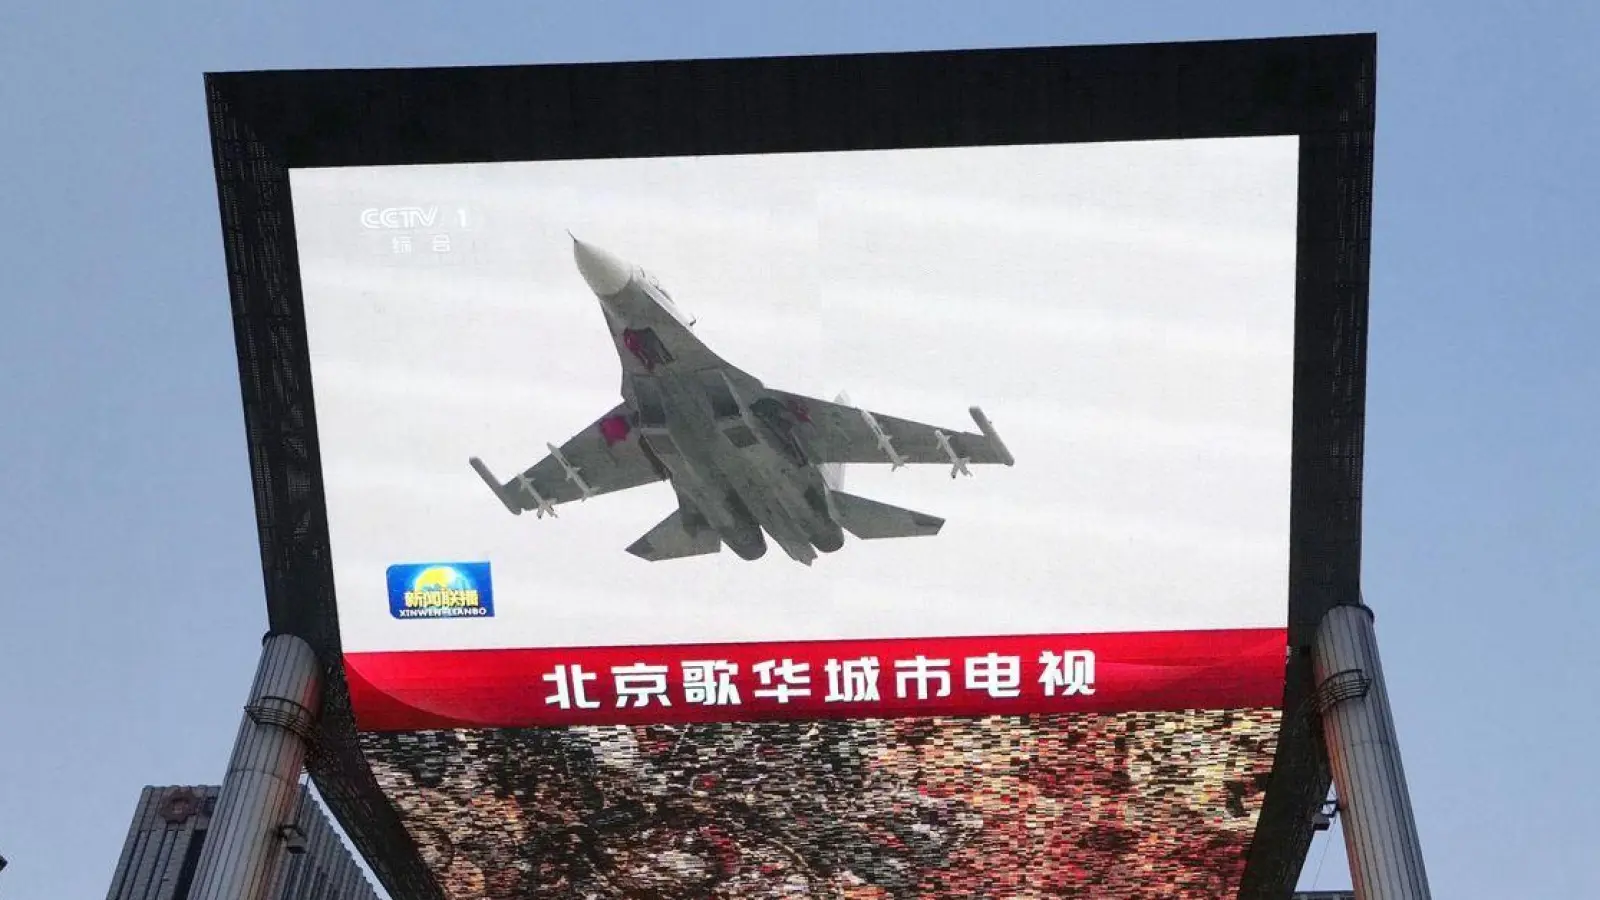 Auf einem Großbildschirm in Peking ist die Nachricht zu sehen, dass Chinas Militär eine zweitägige Übung rund um Taiwan begonnen hat. (Foto: kyodo/dpa)